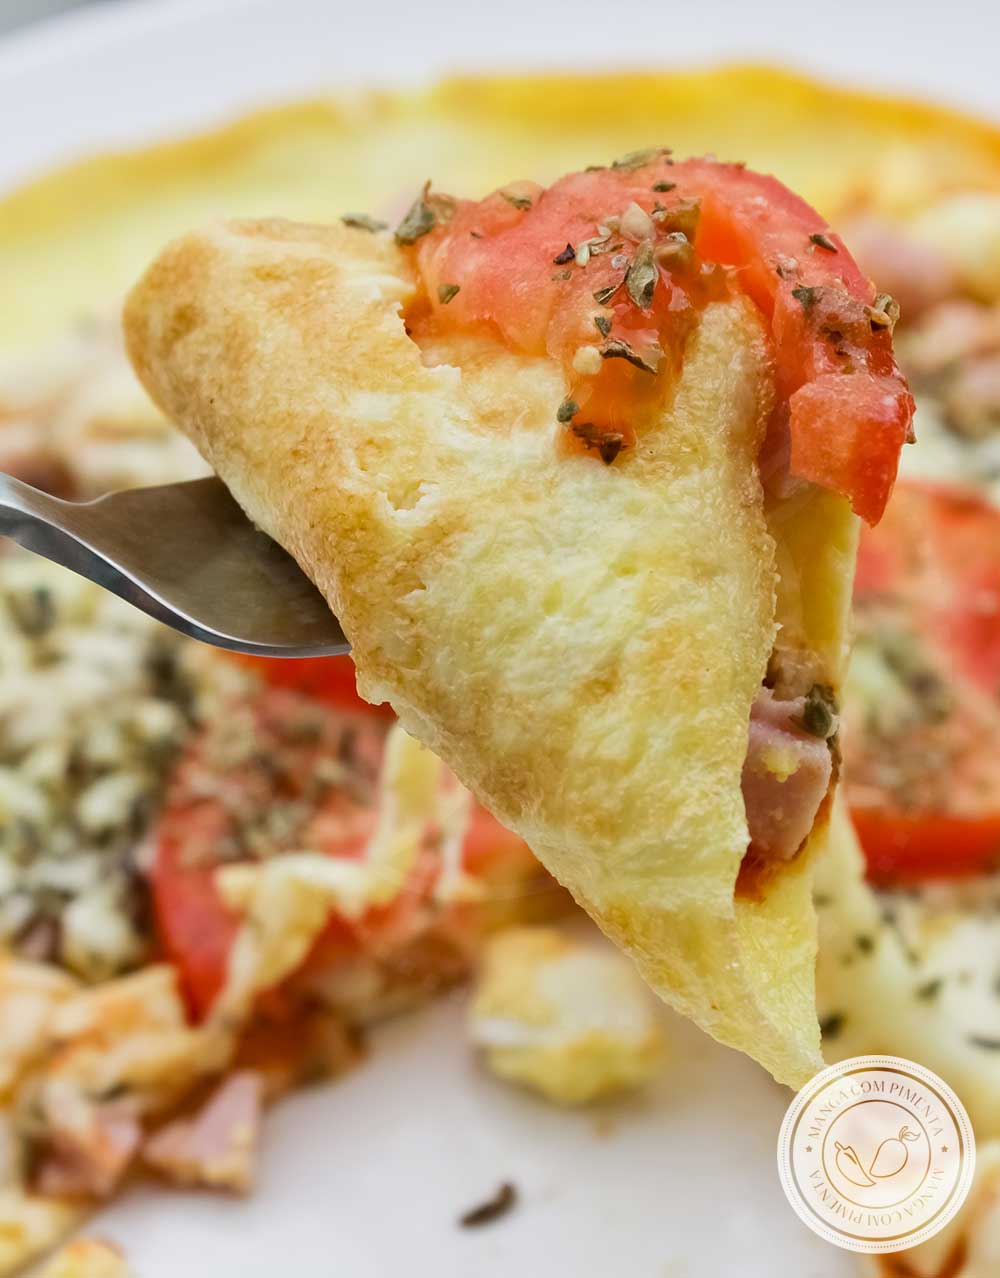 Receita de Pizza Omelete ou Omelete Pizza - prepare um lanche delicioso para um almoço rápido.